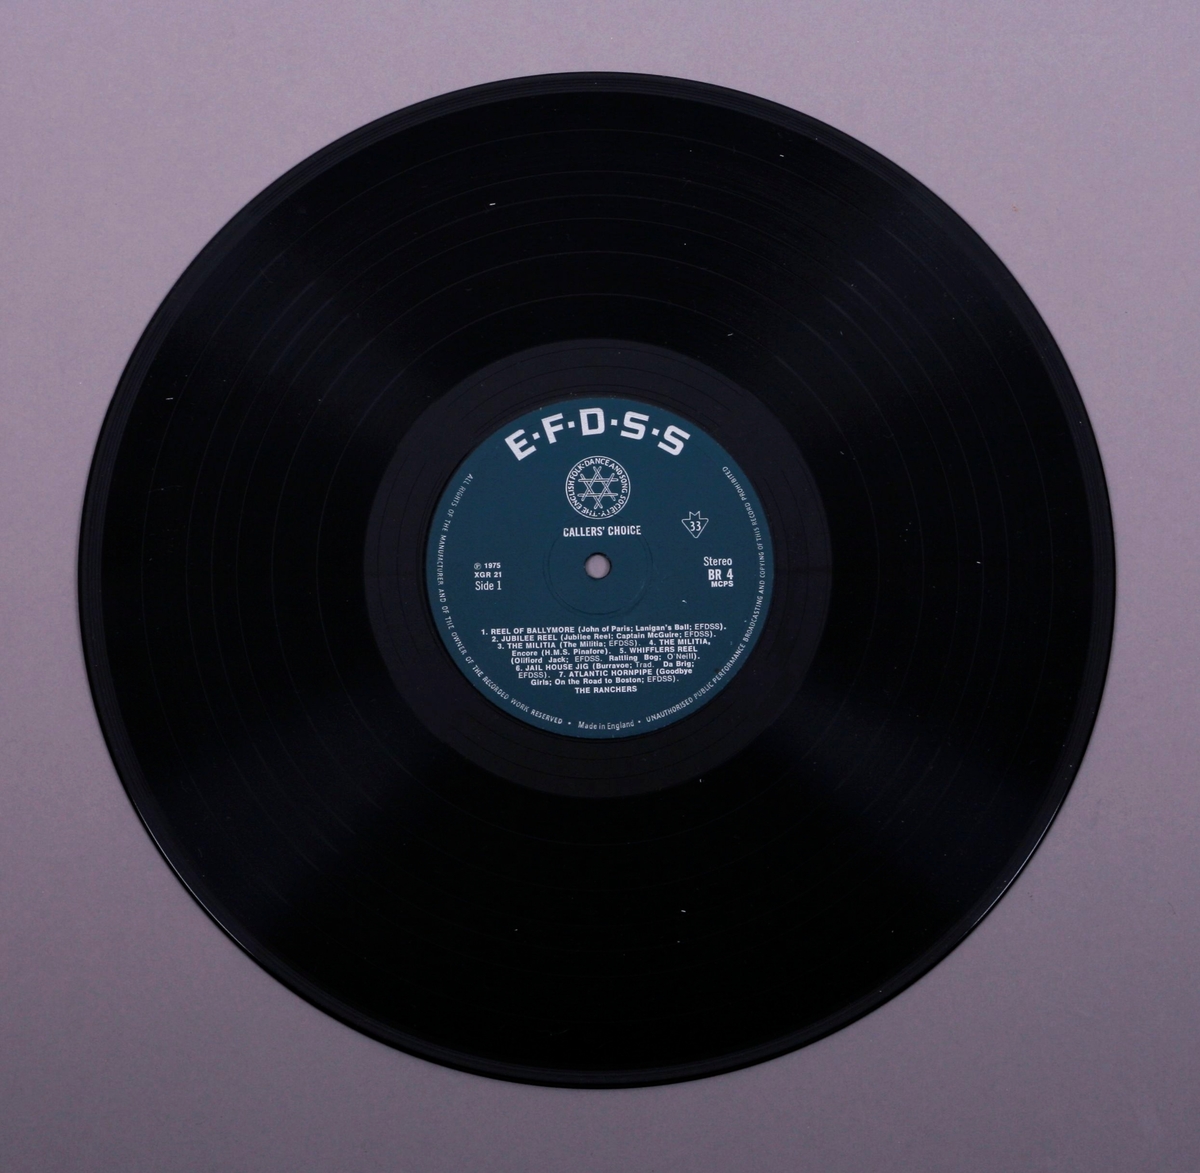 Grammofonplate i svart vinyl og plateomslag i papp. Plata ligger i en papirlomme. Teksthefte av papir.